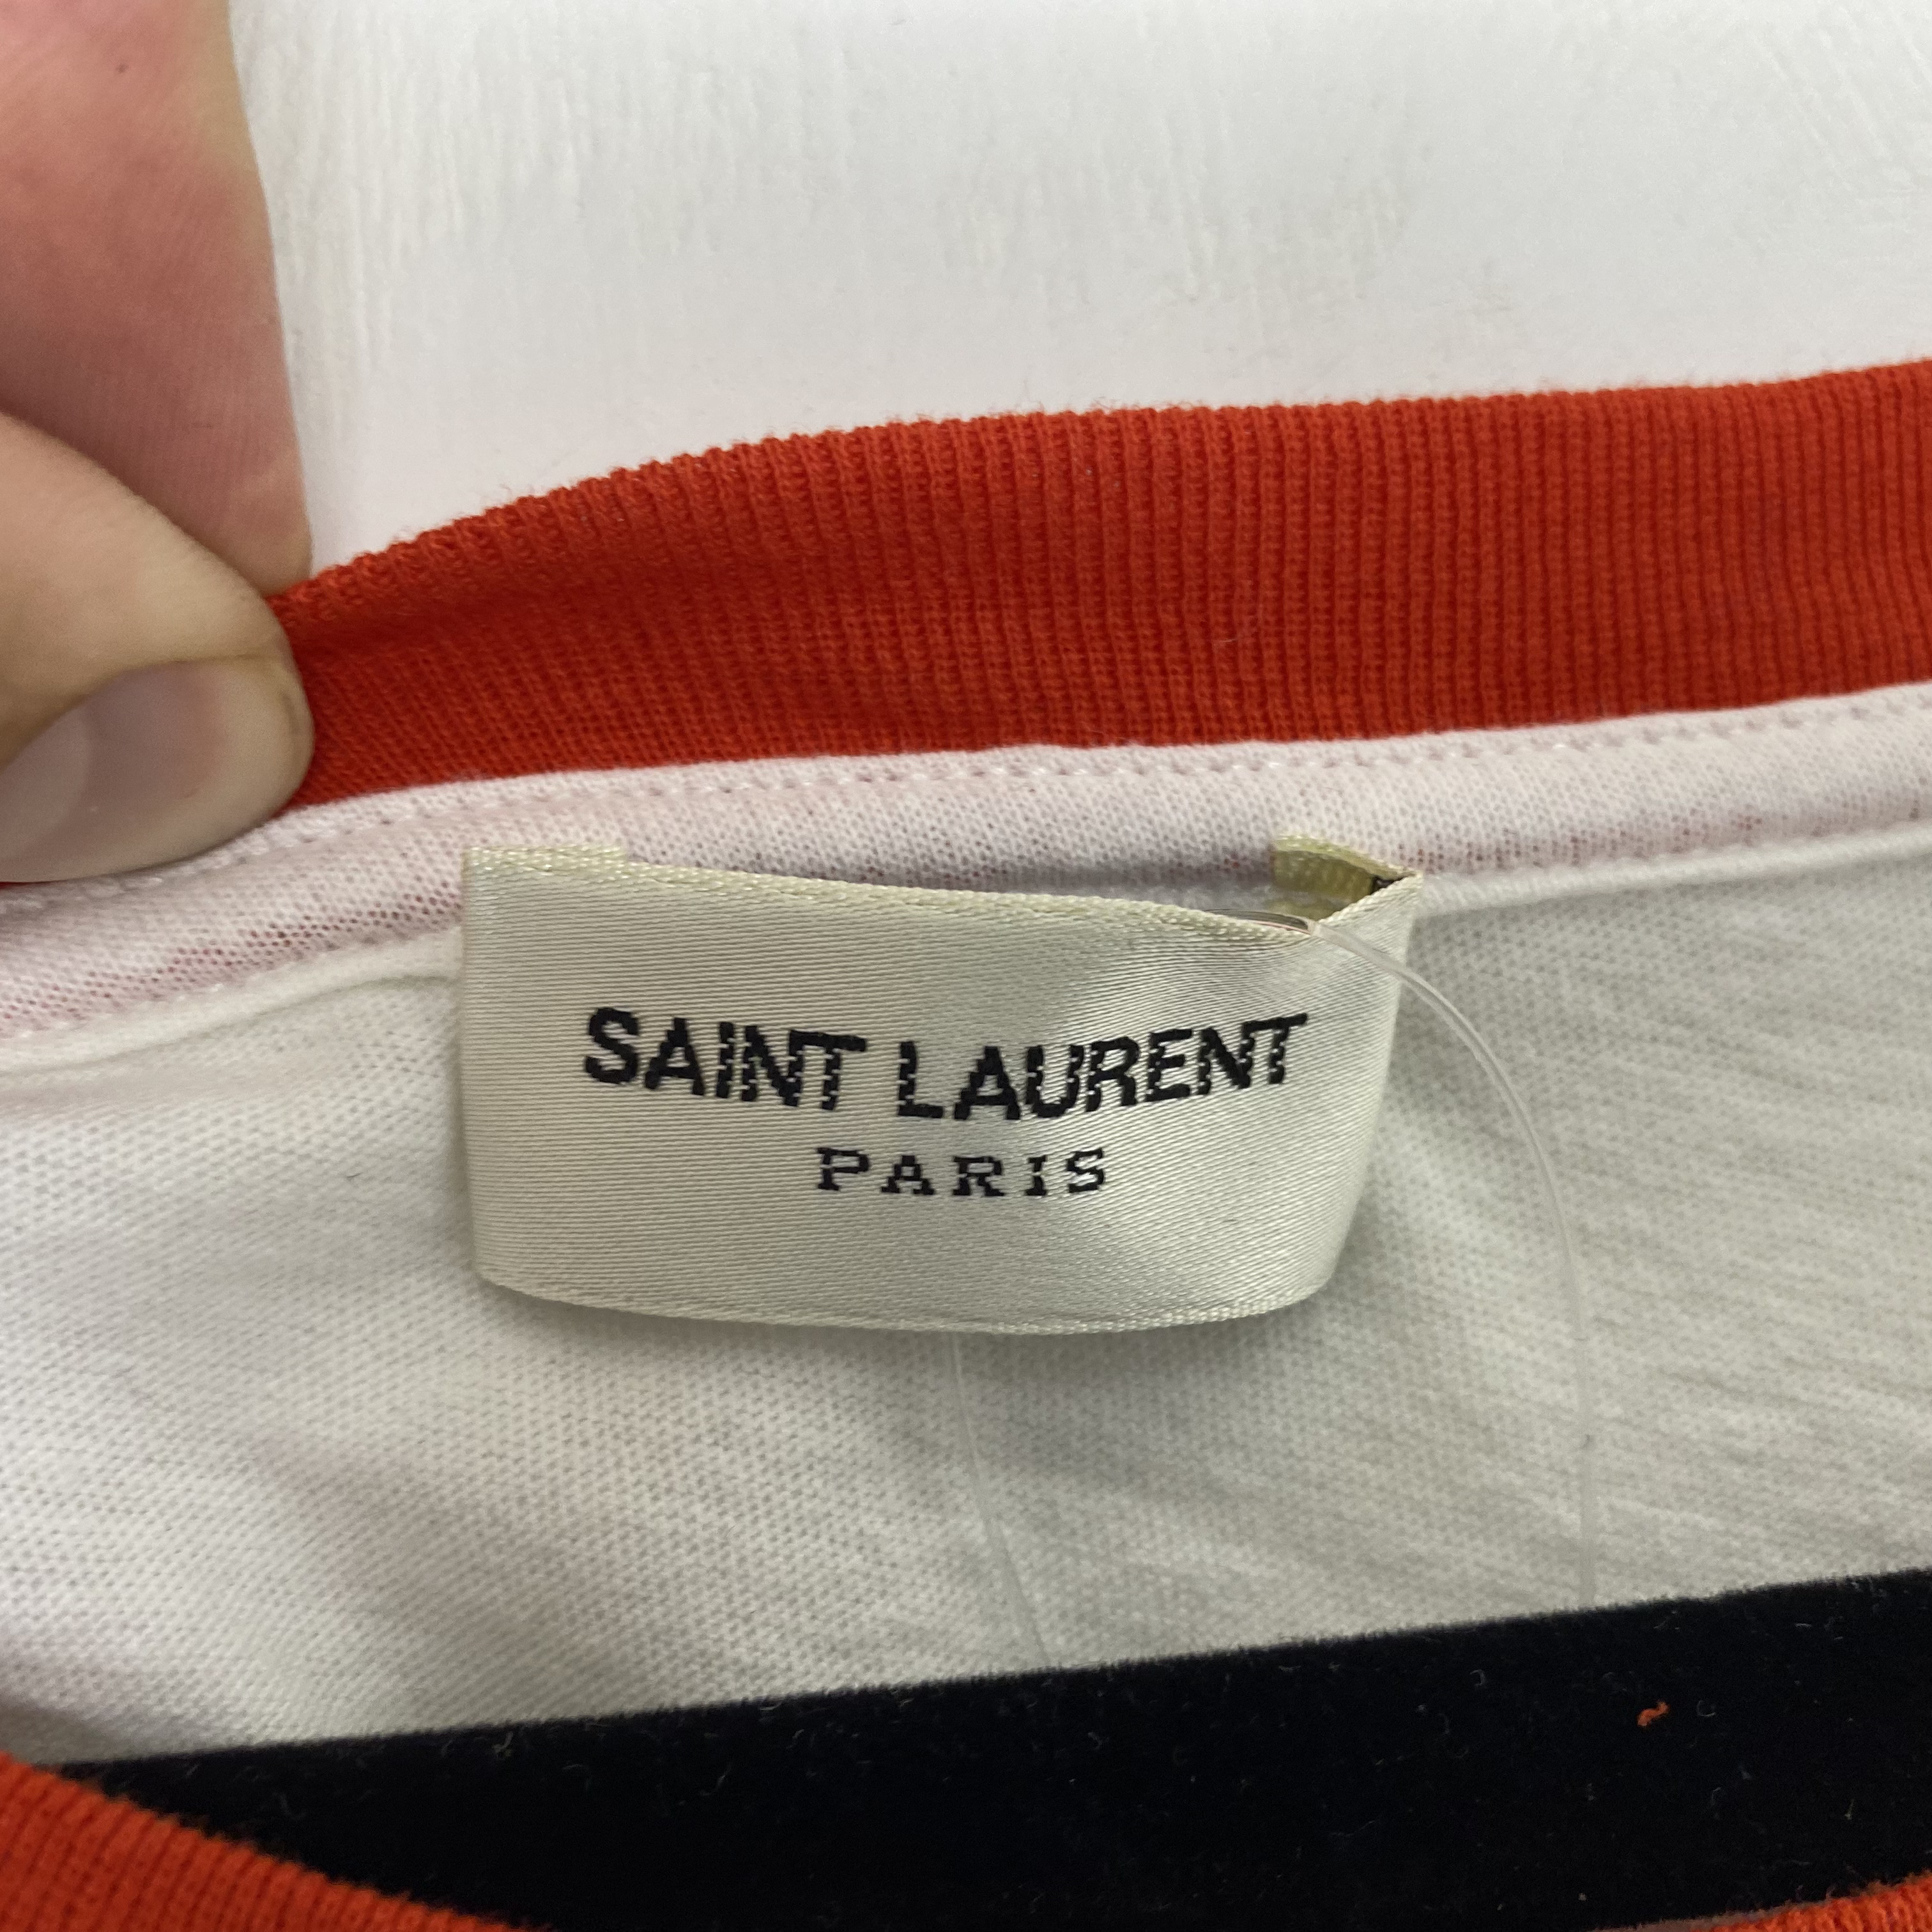 Saint Laurent T-Shirt, 'Waiting For Sunset' T-Shirt (L)